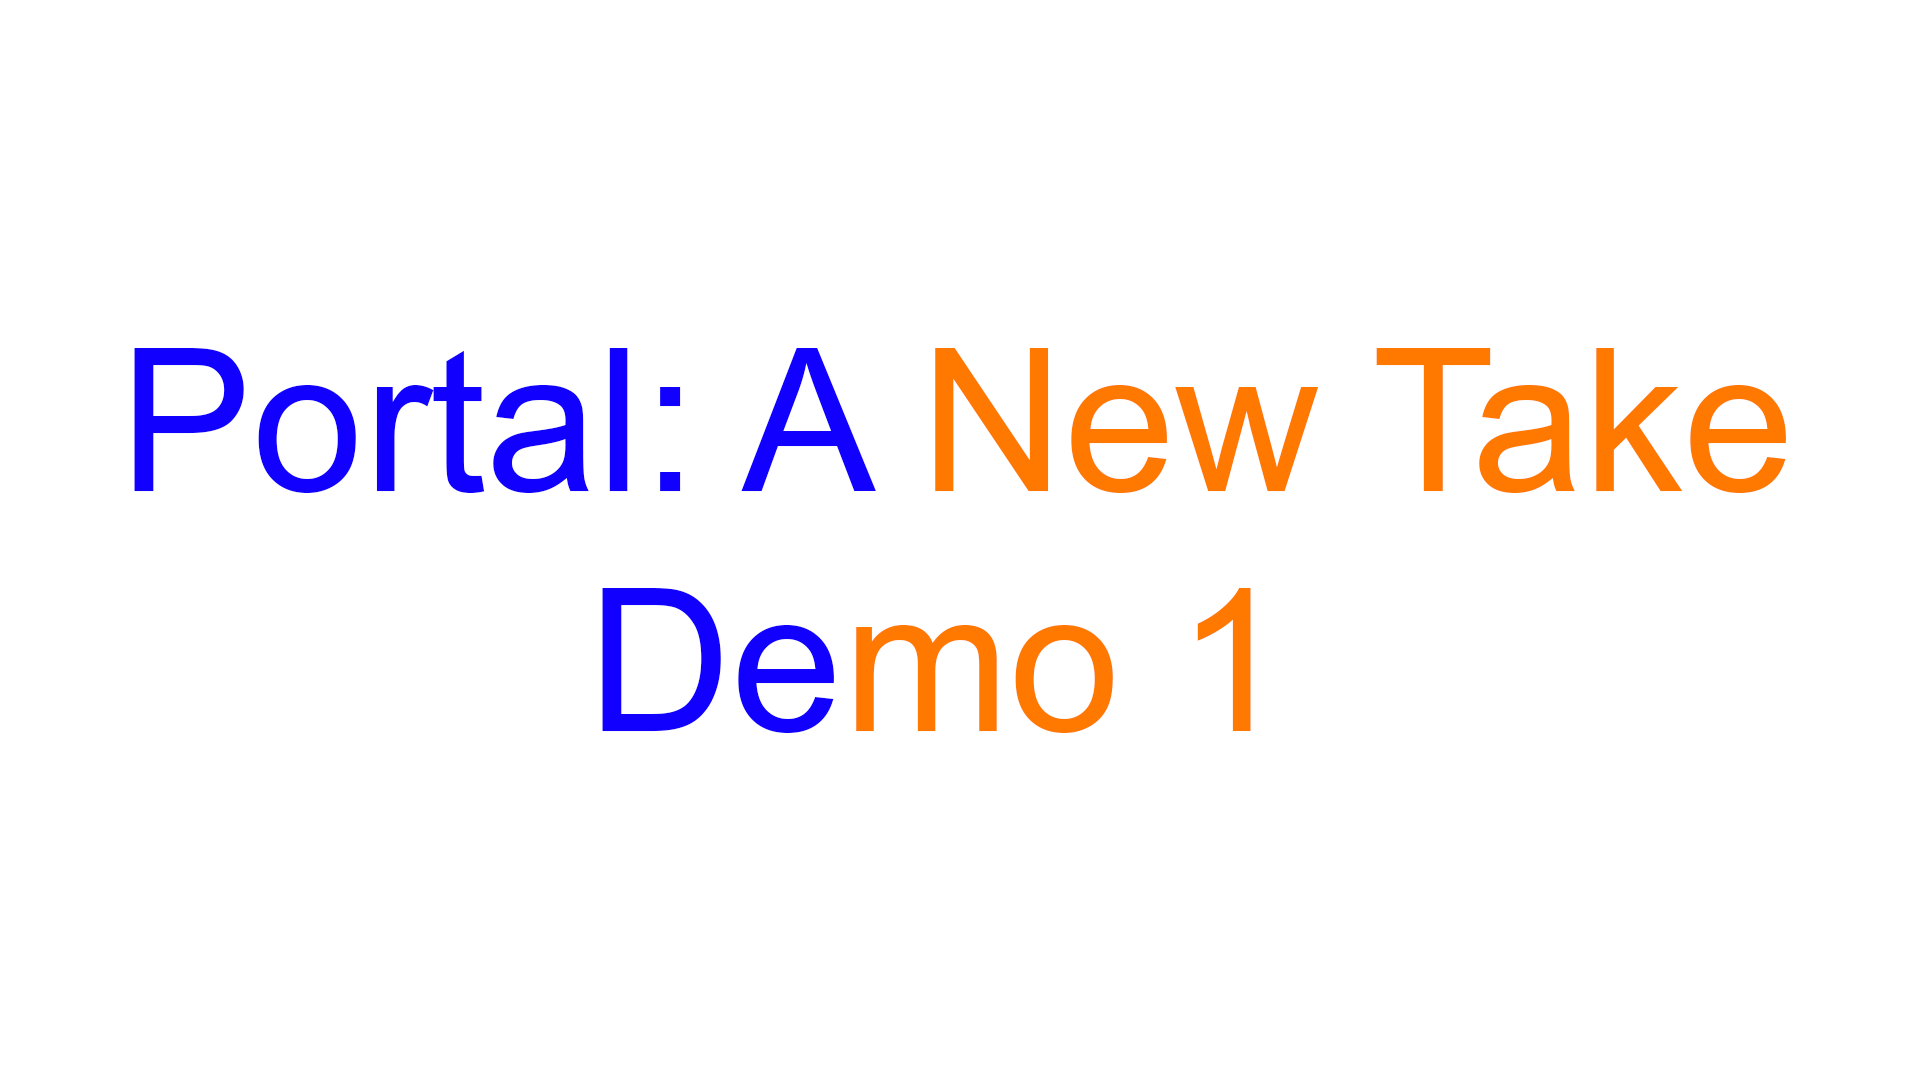 download tagr demo